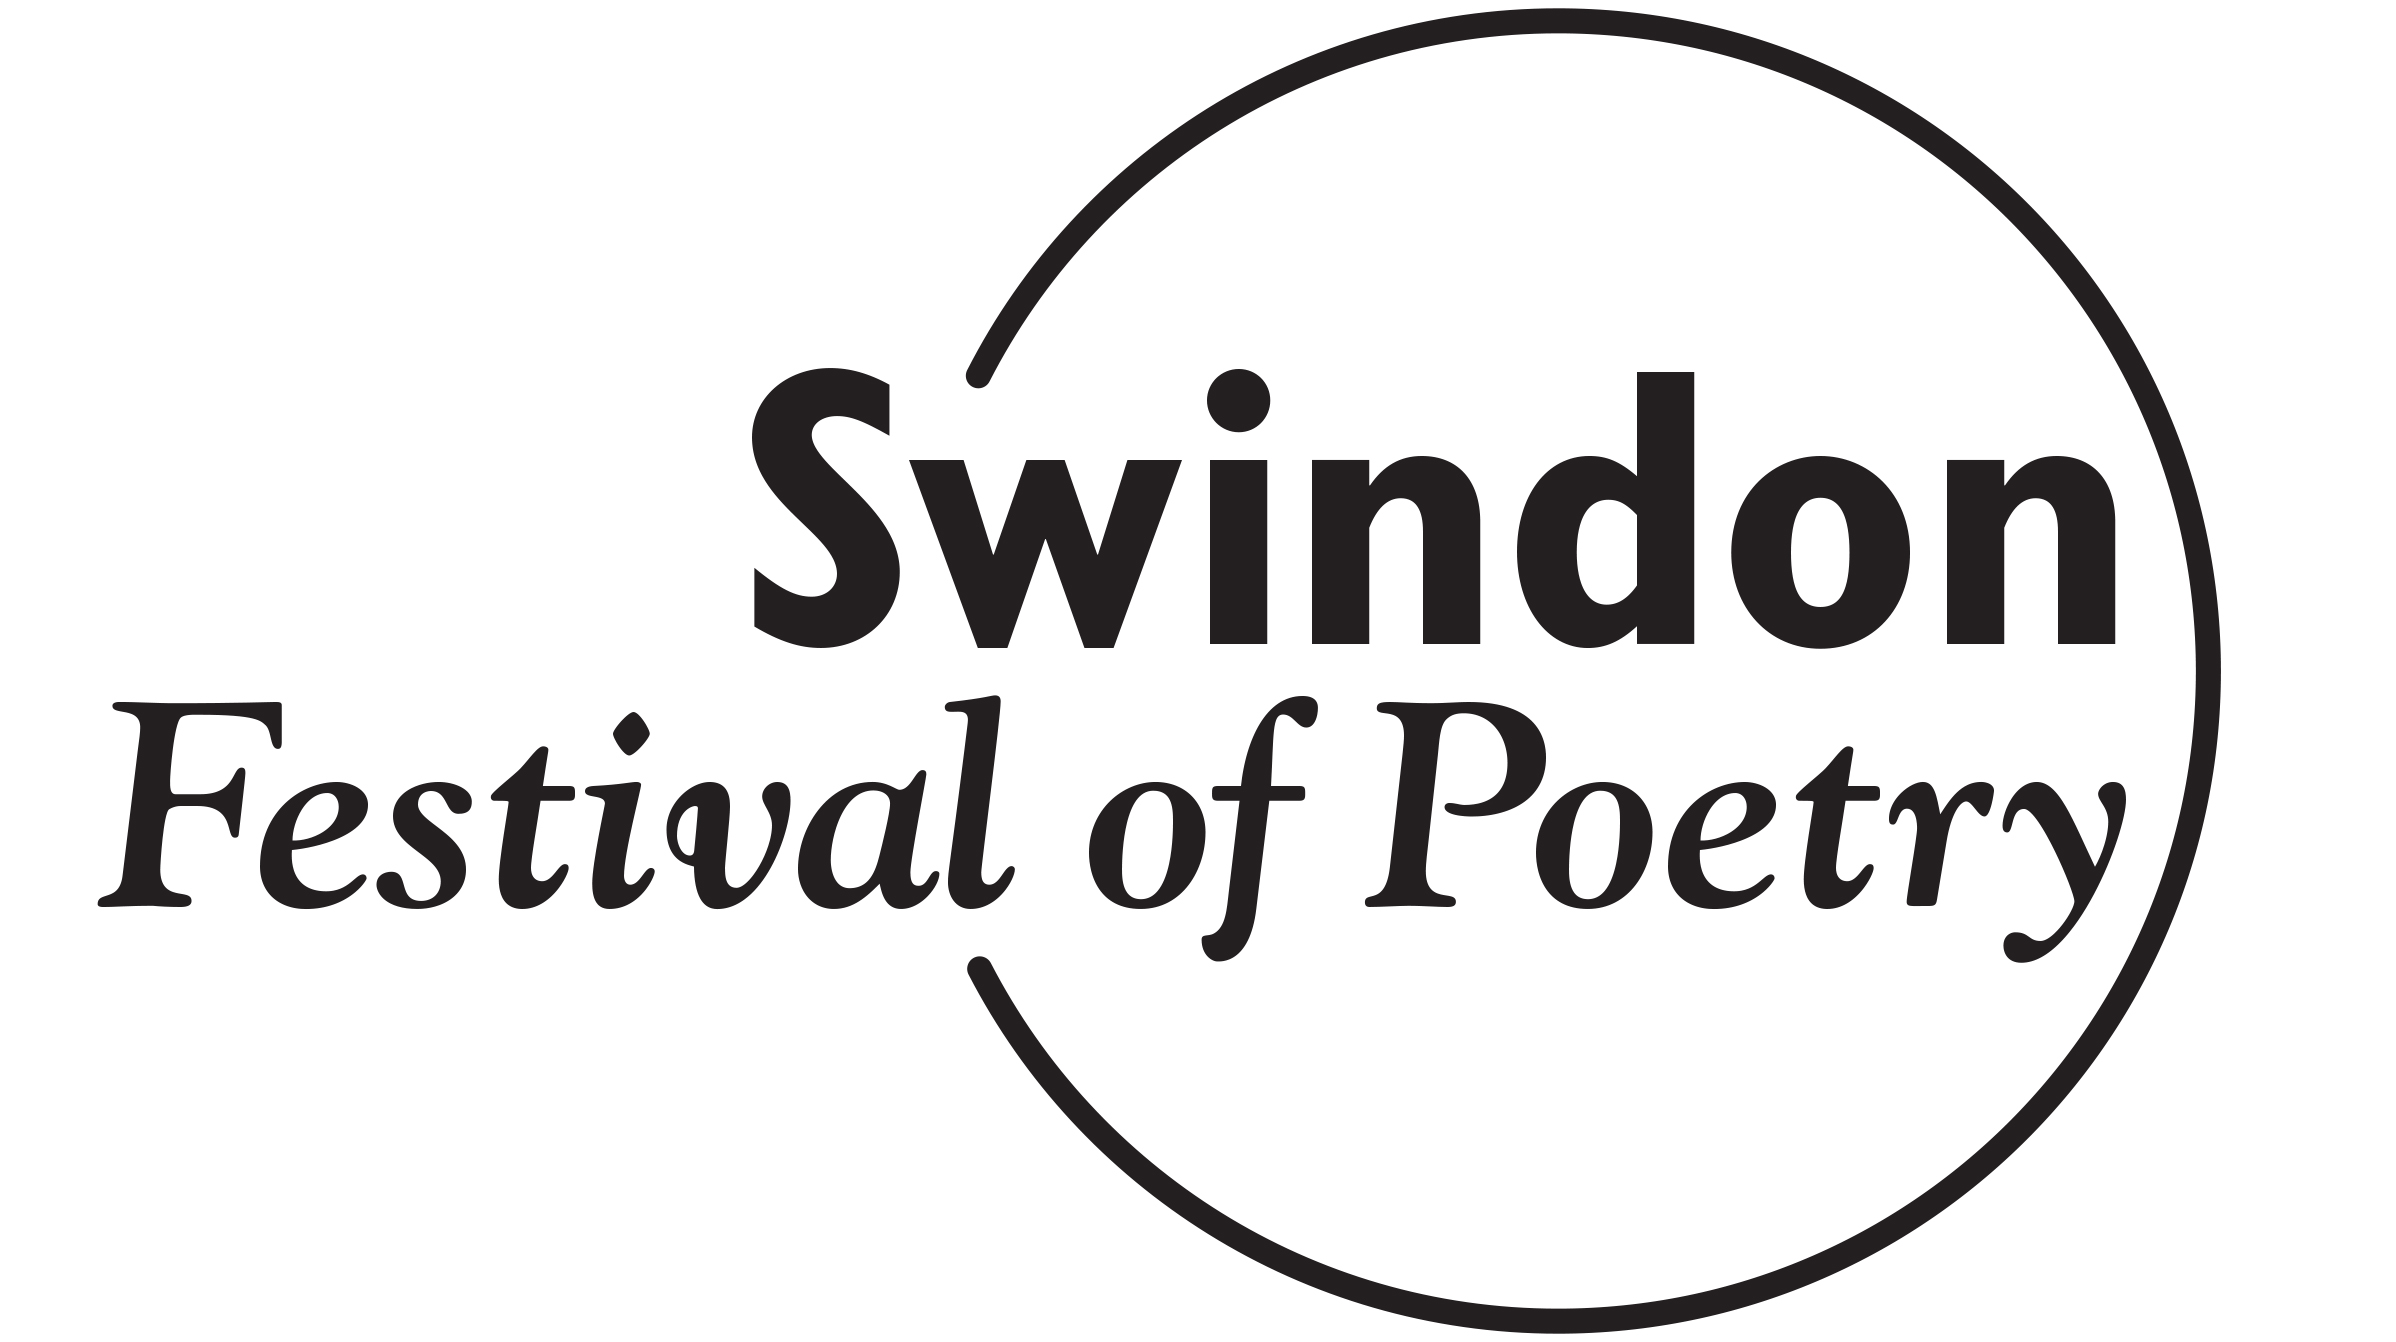 Swindon Festival of Poetry